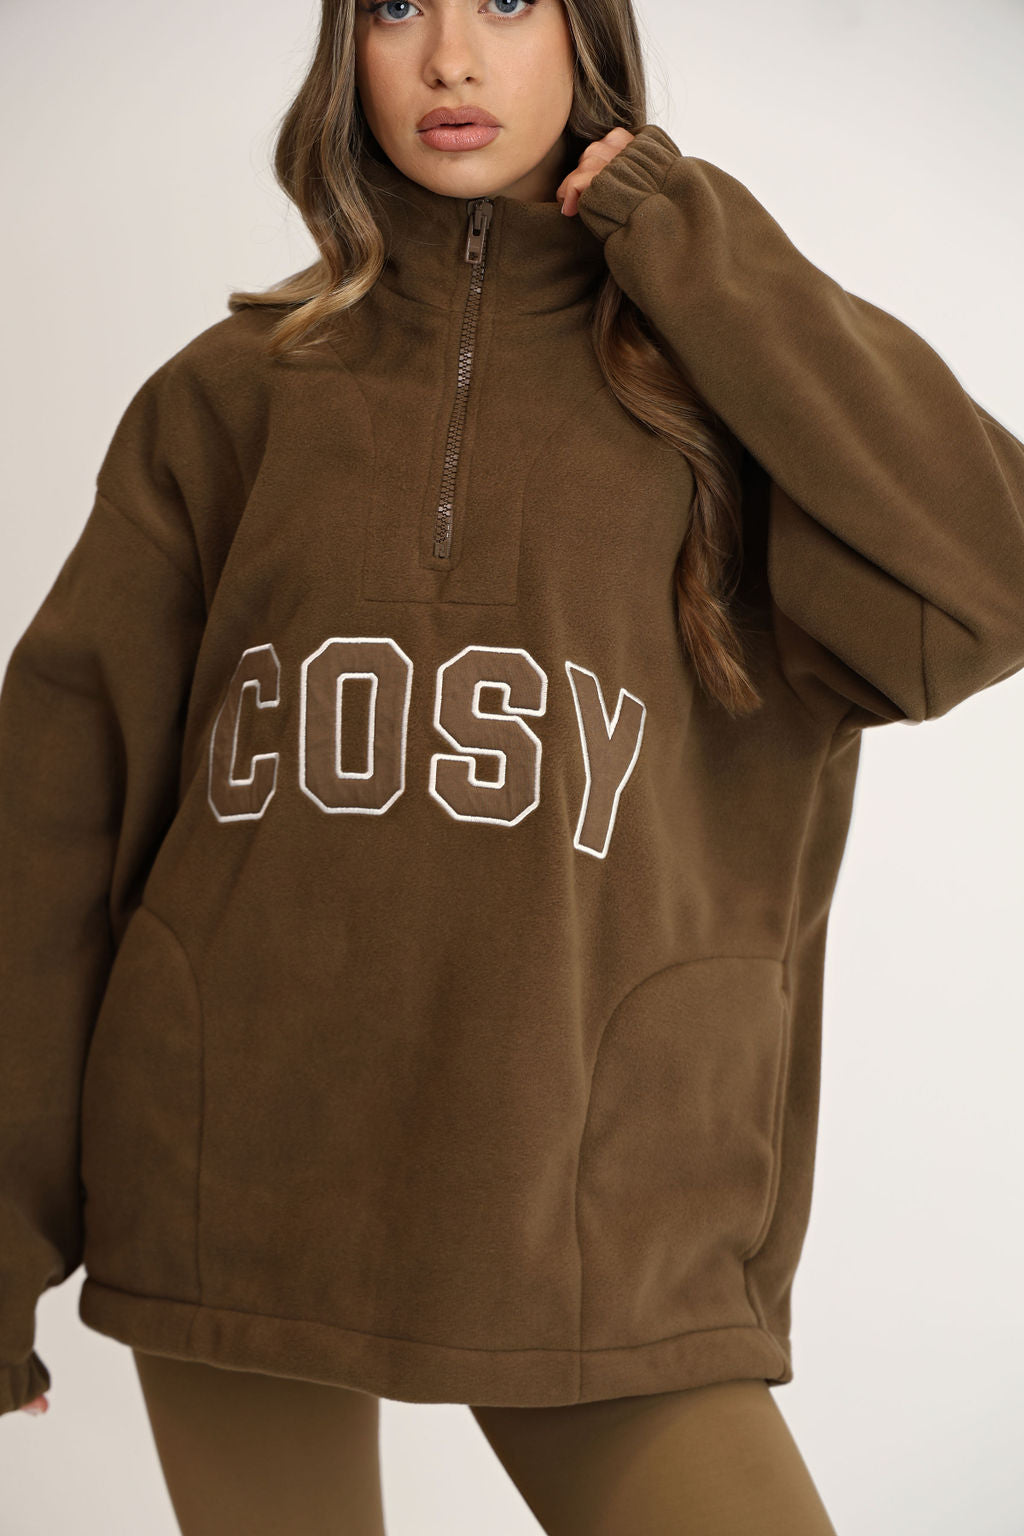 Cosy Zipped Fleece | Ethically Crafted, Oeko-Tex Certified Comfortable ...